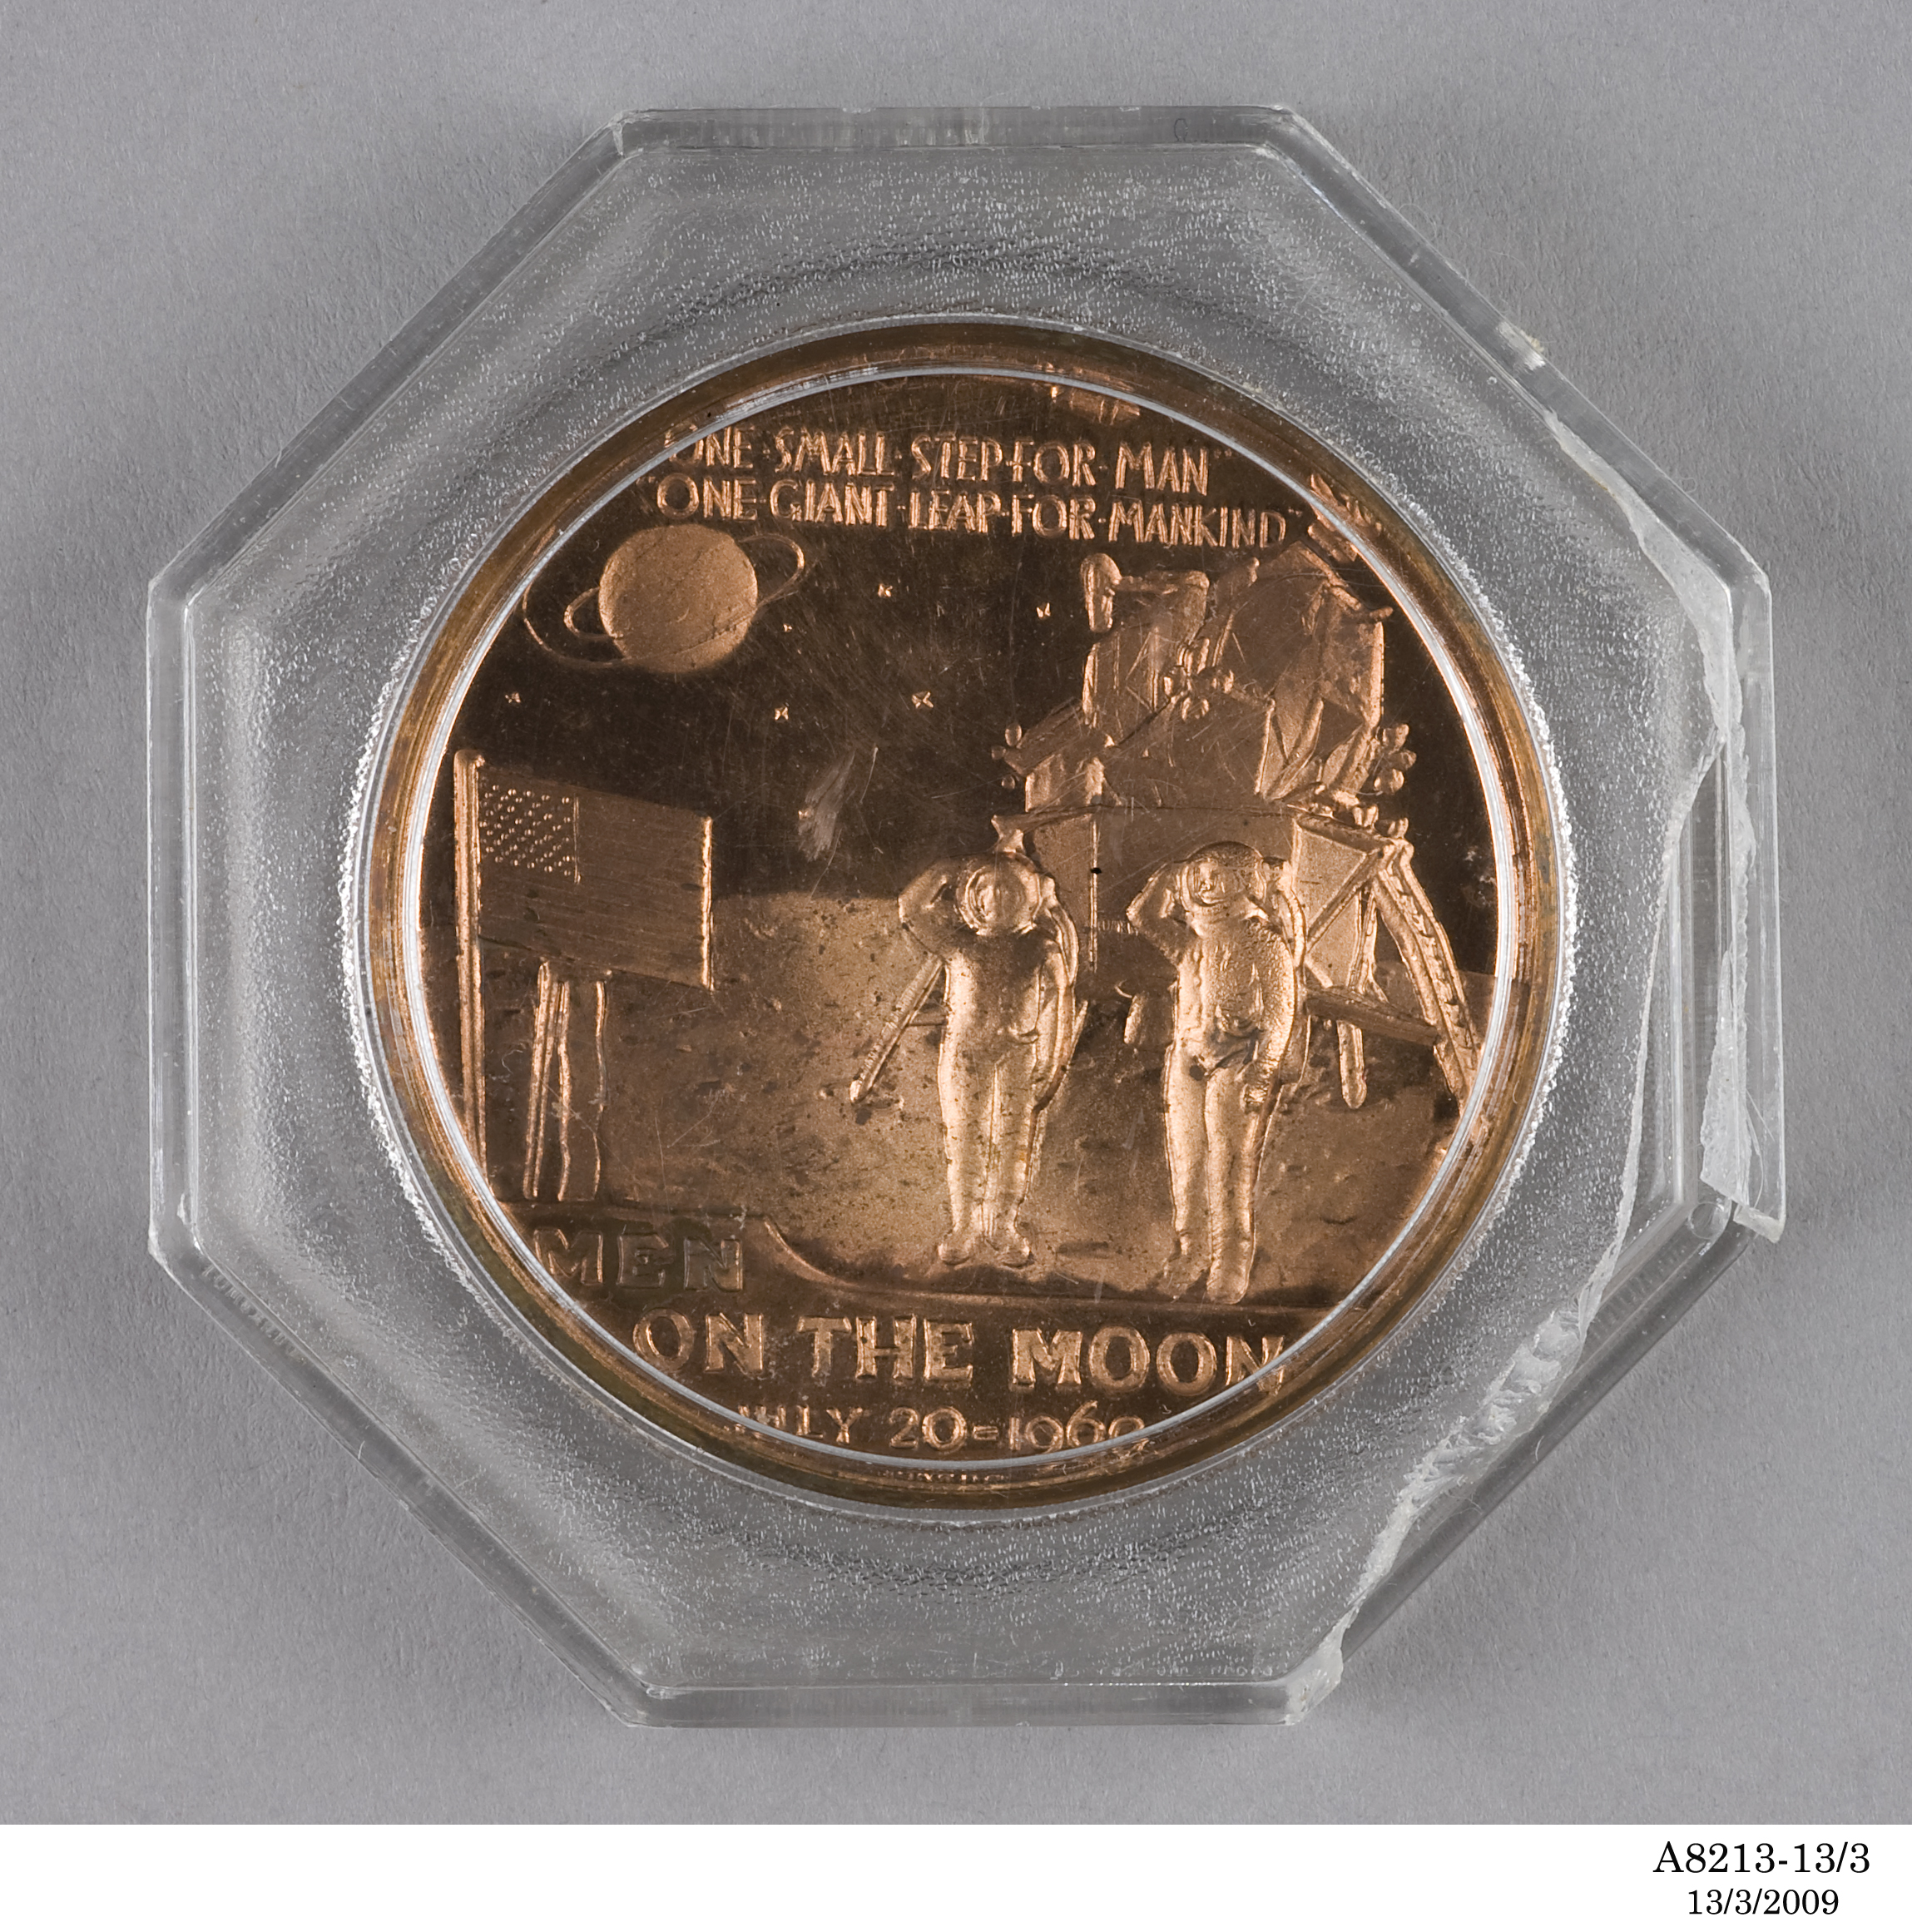 'Apollo 11' commemorative medallion